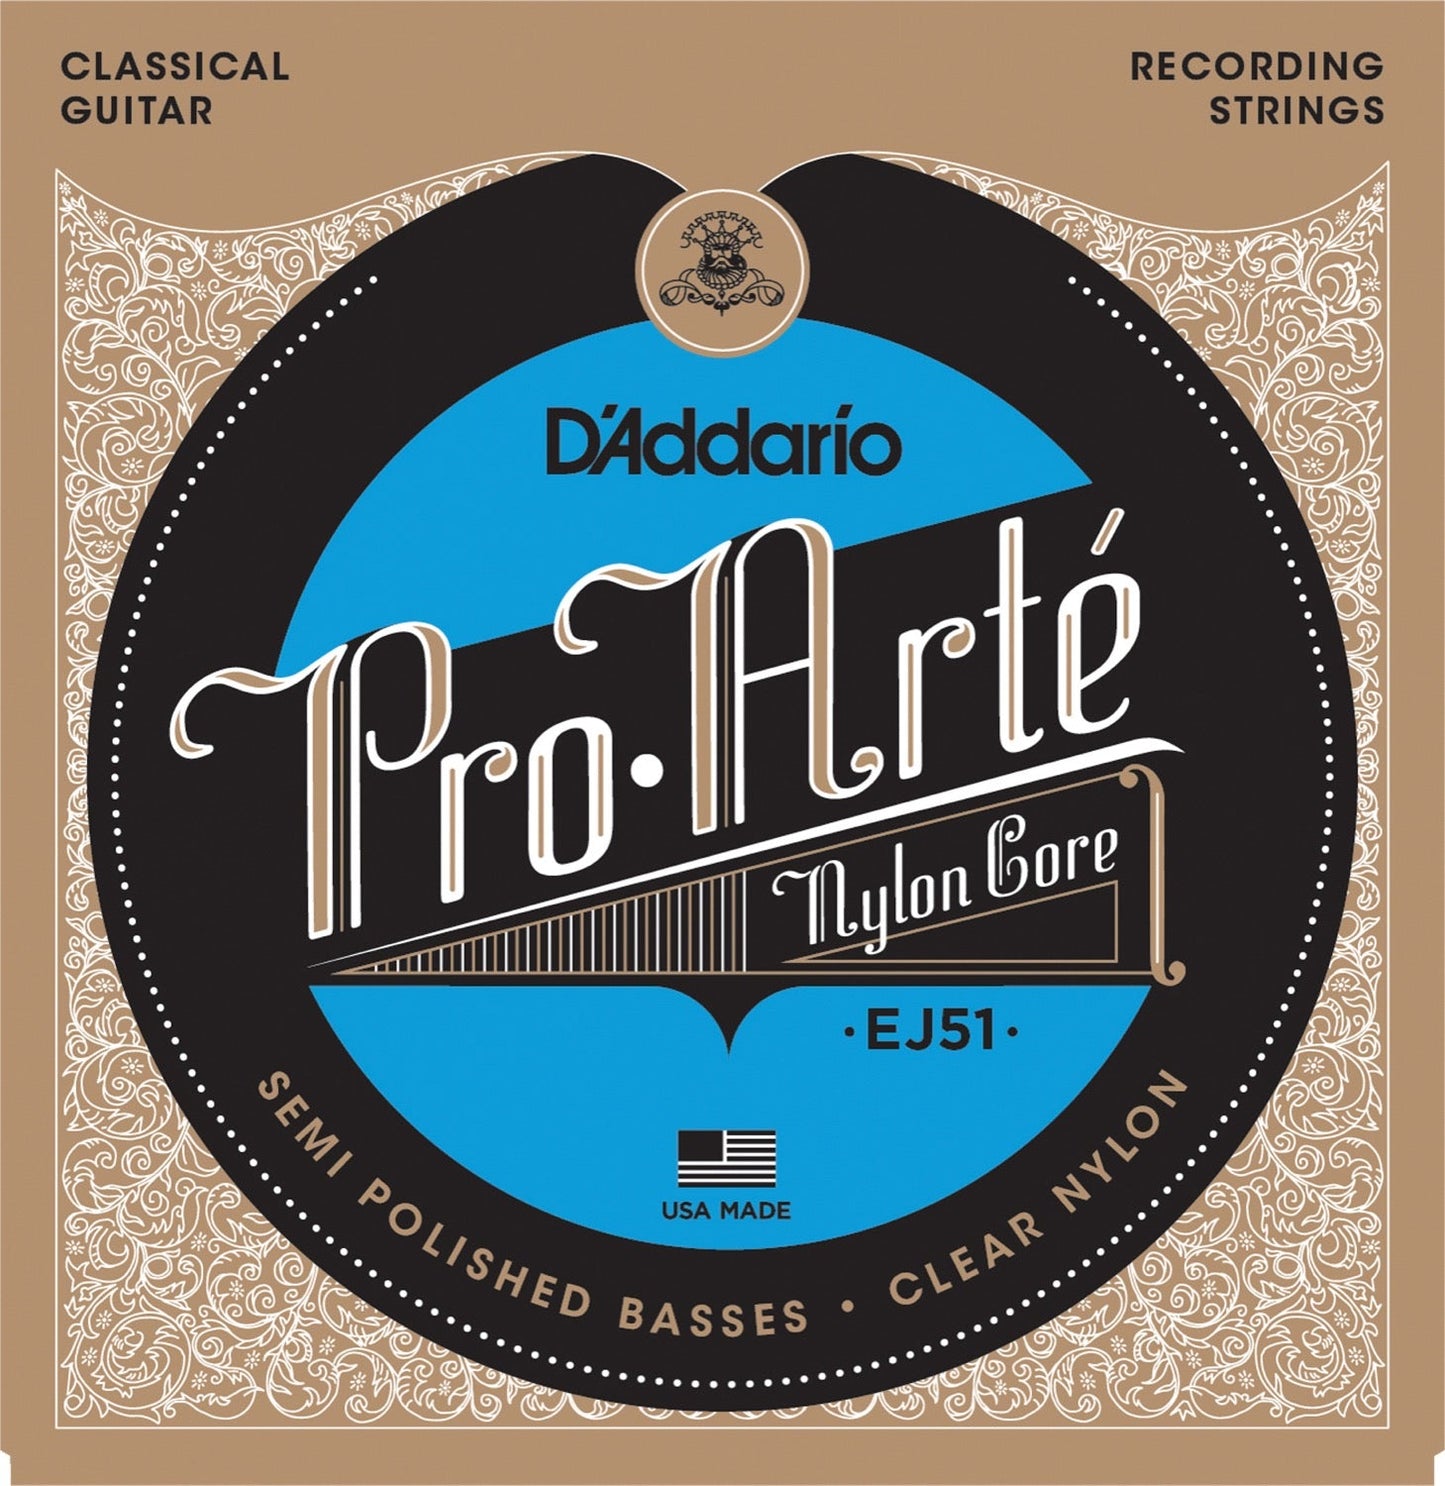 D'Addario - Pro Arte - Nylon Core